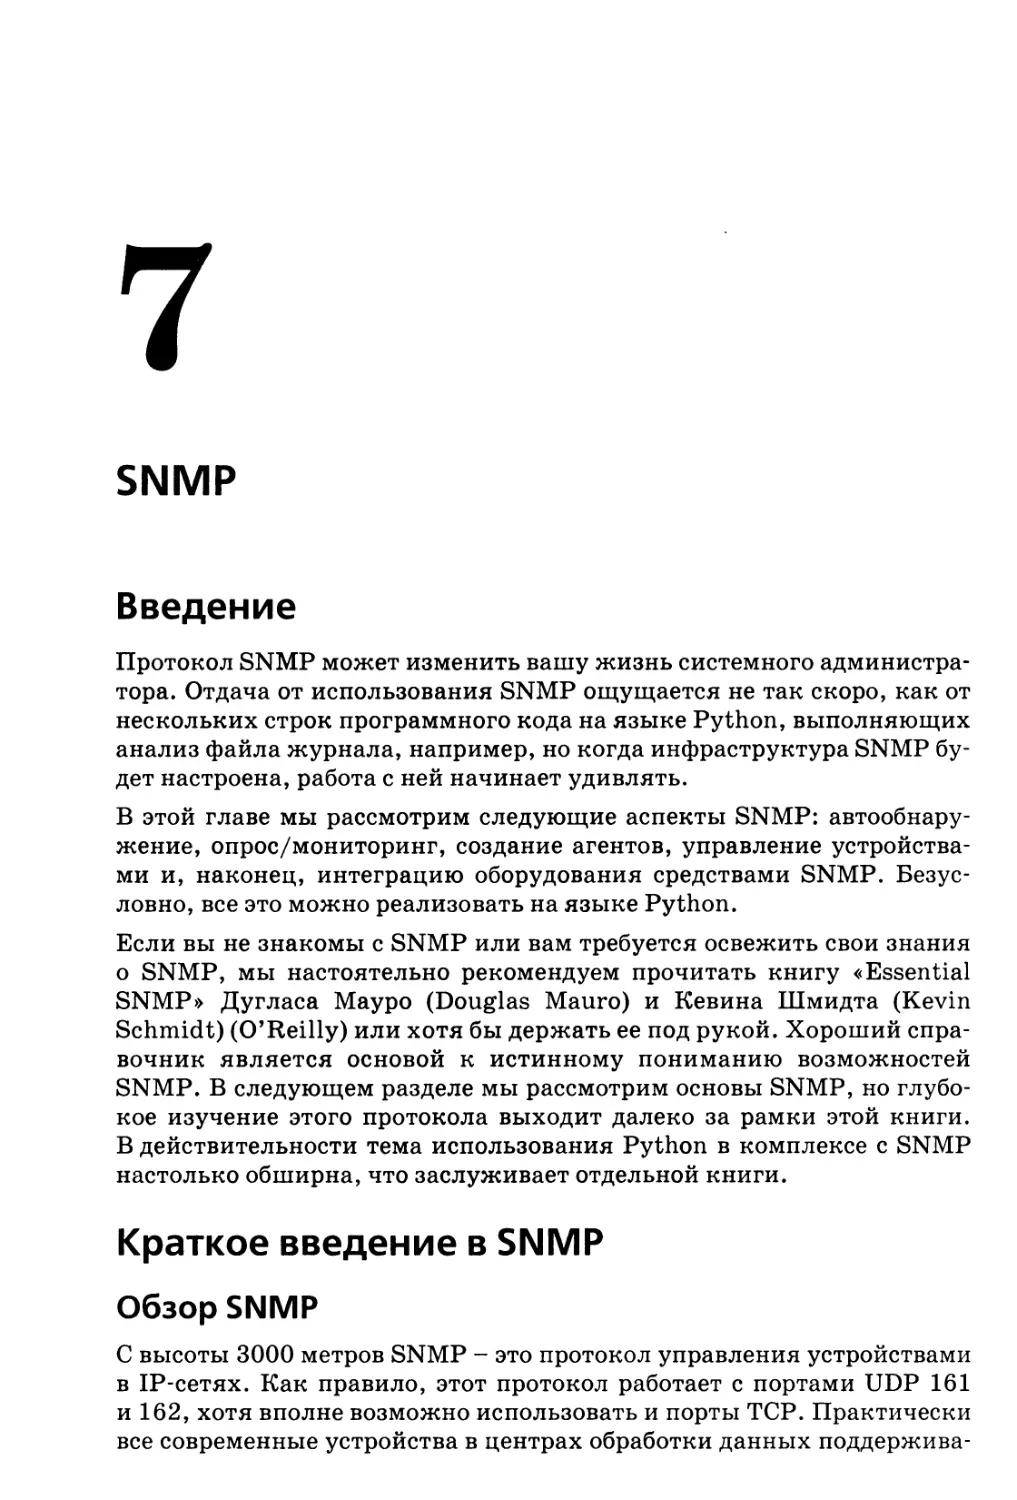 7. SNMP
Краткое введение в SNMP